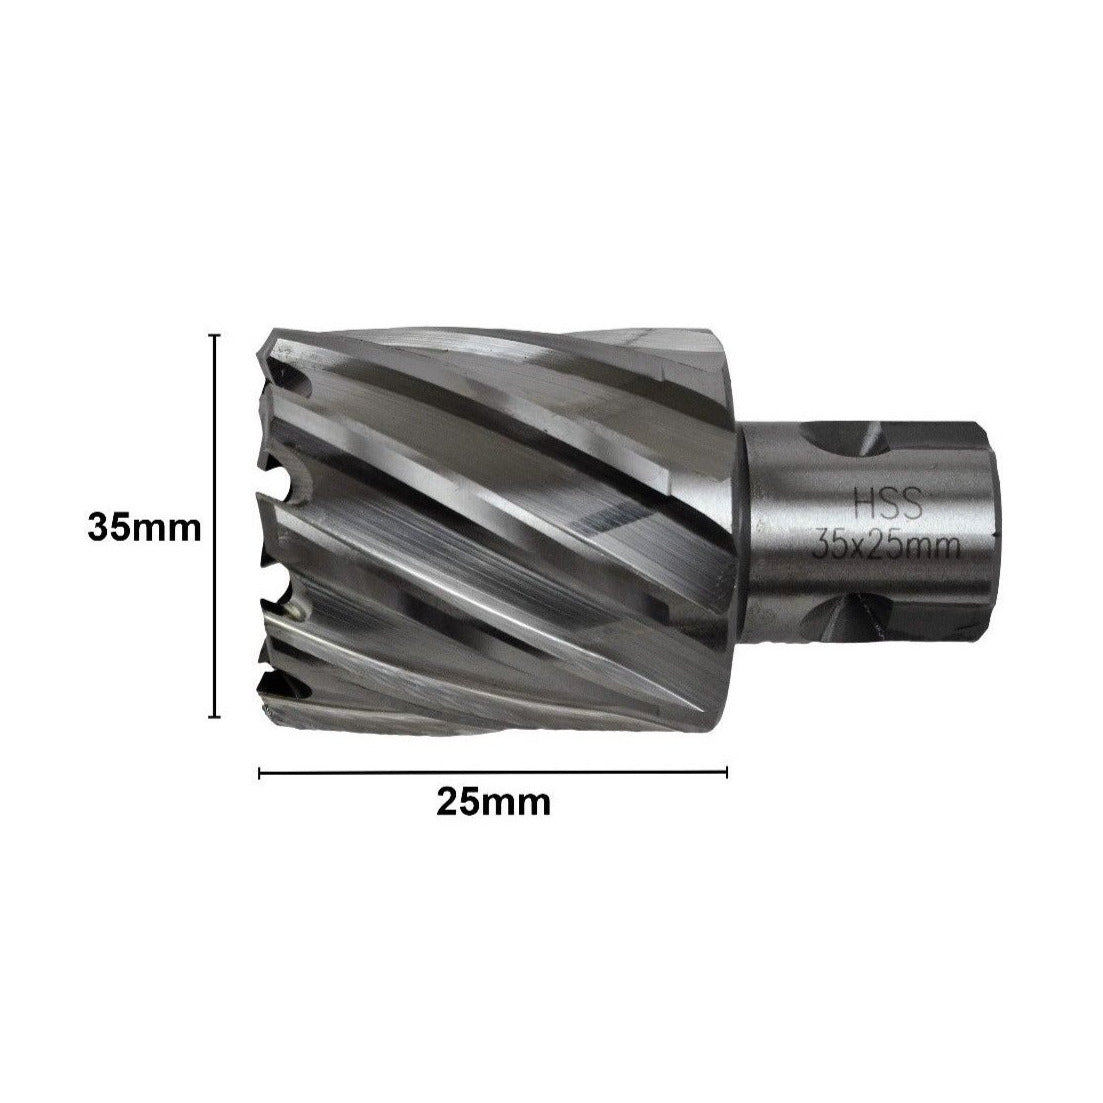 35x25 mm HSS Annular Broach Cutter ; Magnetic Drill. ; Rotabroach ; Universal Shank